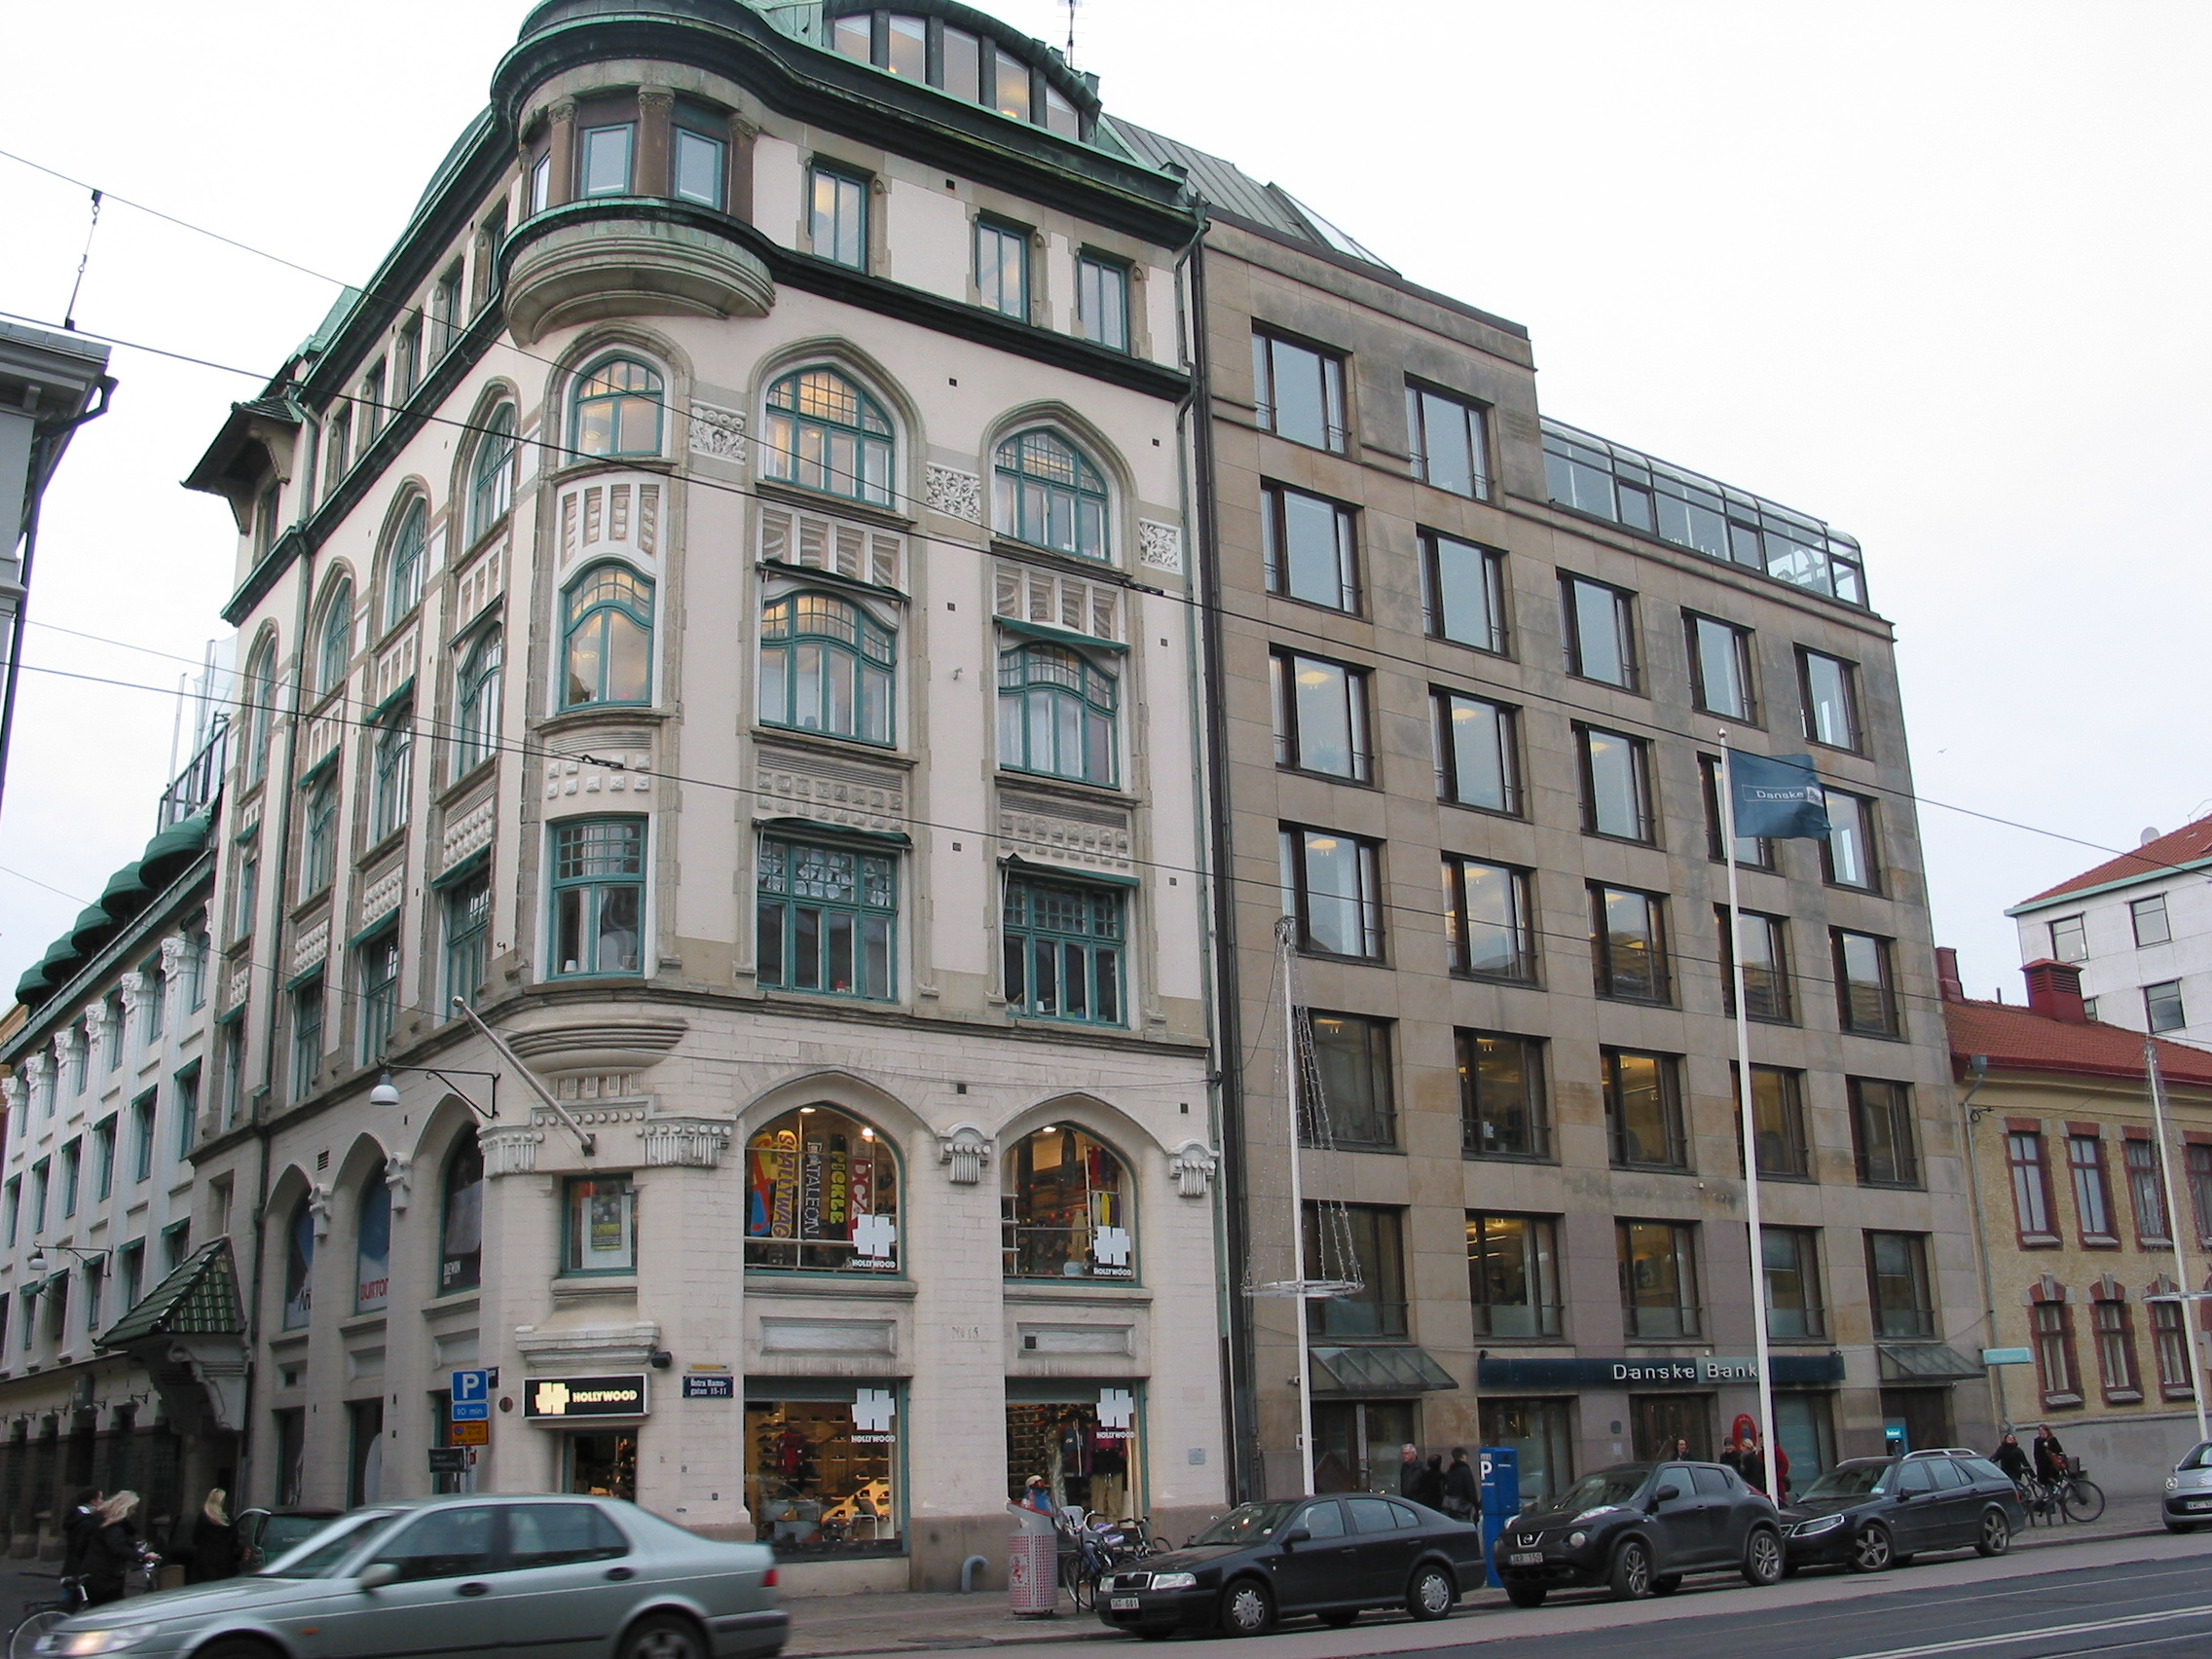 Till vänster kontorshus i jugendstil från 1906, till höger kontorsbyggnad uppförd 1985-86 efter ritningar av White arkitekter genom Birgitta Illes. Den nya byggnaden anpassades till det höga sekelskifteshuset i söder. Taklinjen bryts av ett rundat glasparti, vilket skapar asymmetri i den för övrigt symmetriska fasaden. Fönstren har vinklade sidopartier.